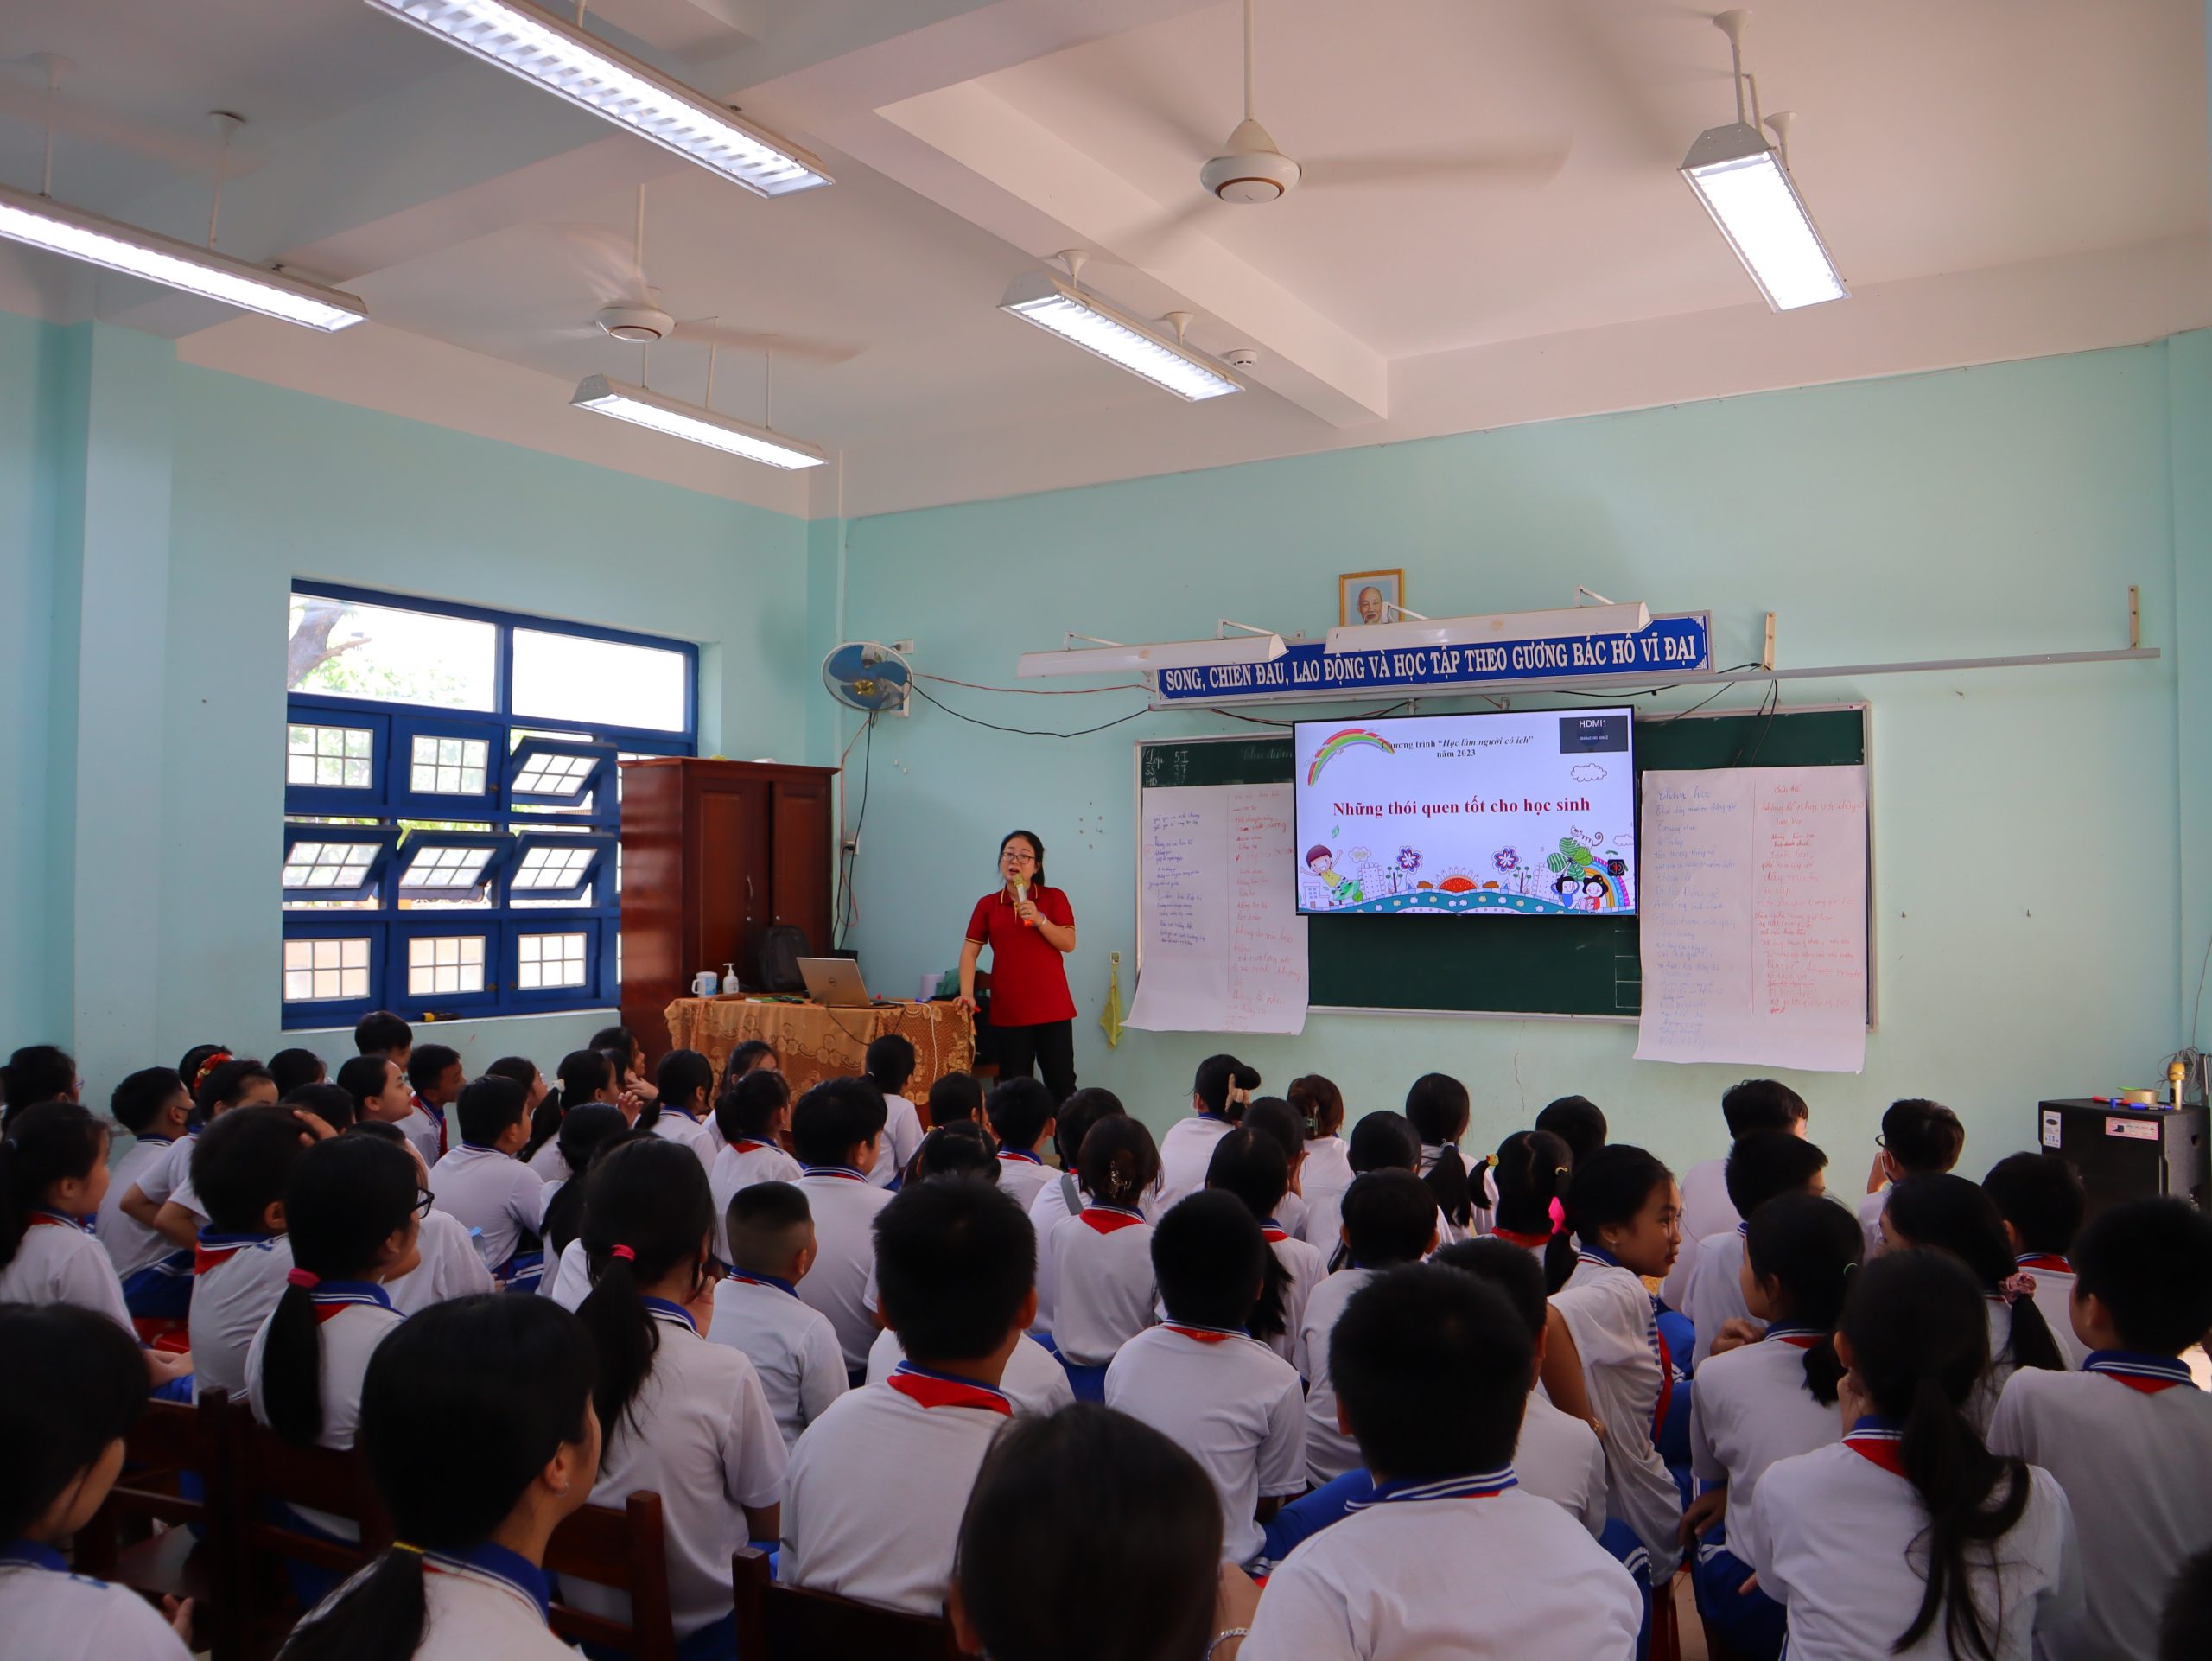 Tổ chức chương trình “Học làm người có ích” năm 2023 cho hơn 100 em học sinh trường Tiểu học Quang Trung, thành phố Quy Nhơn.